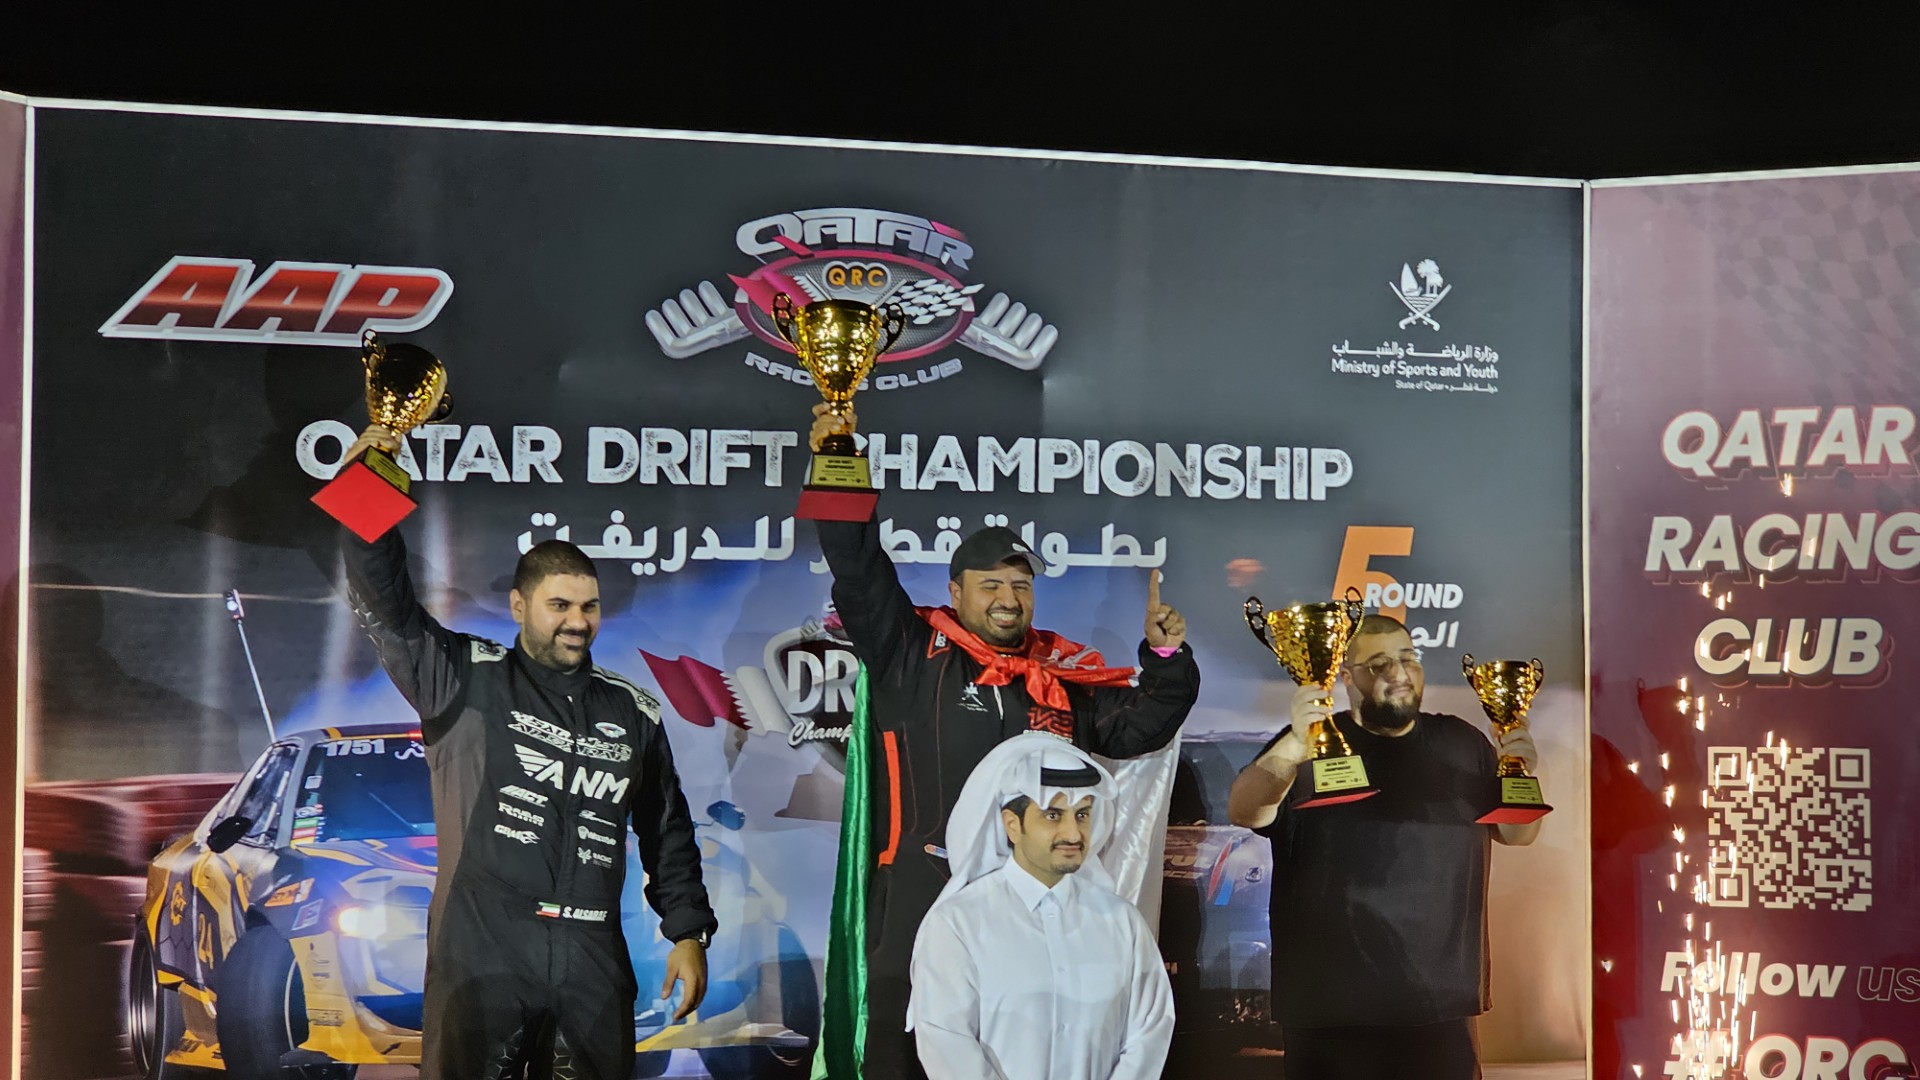 Kuwait's Al-Sarraf ranks second at Qatar Drift Championship